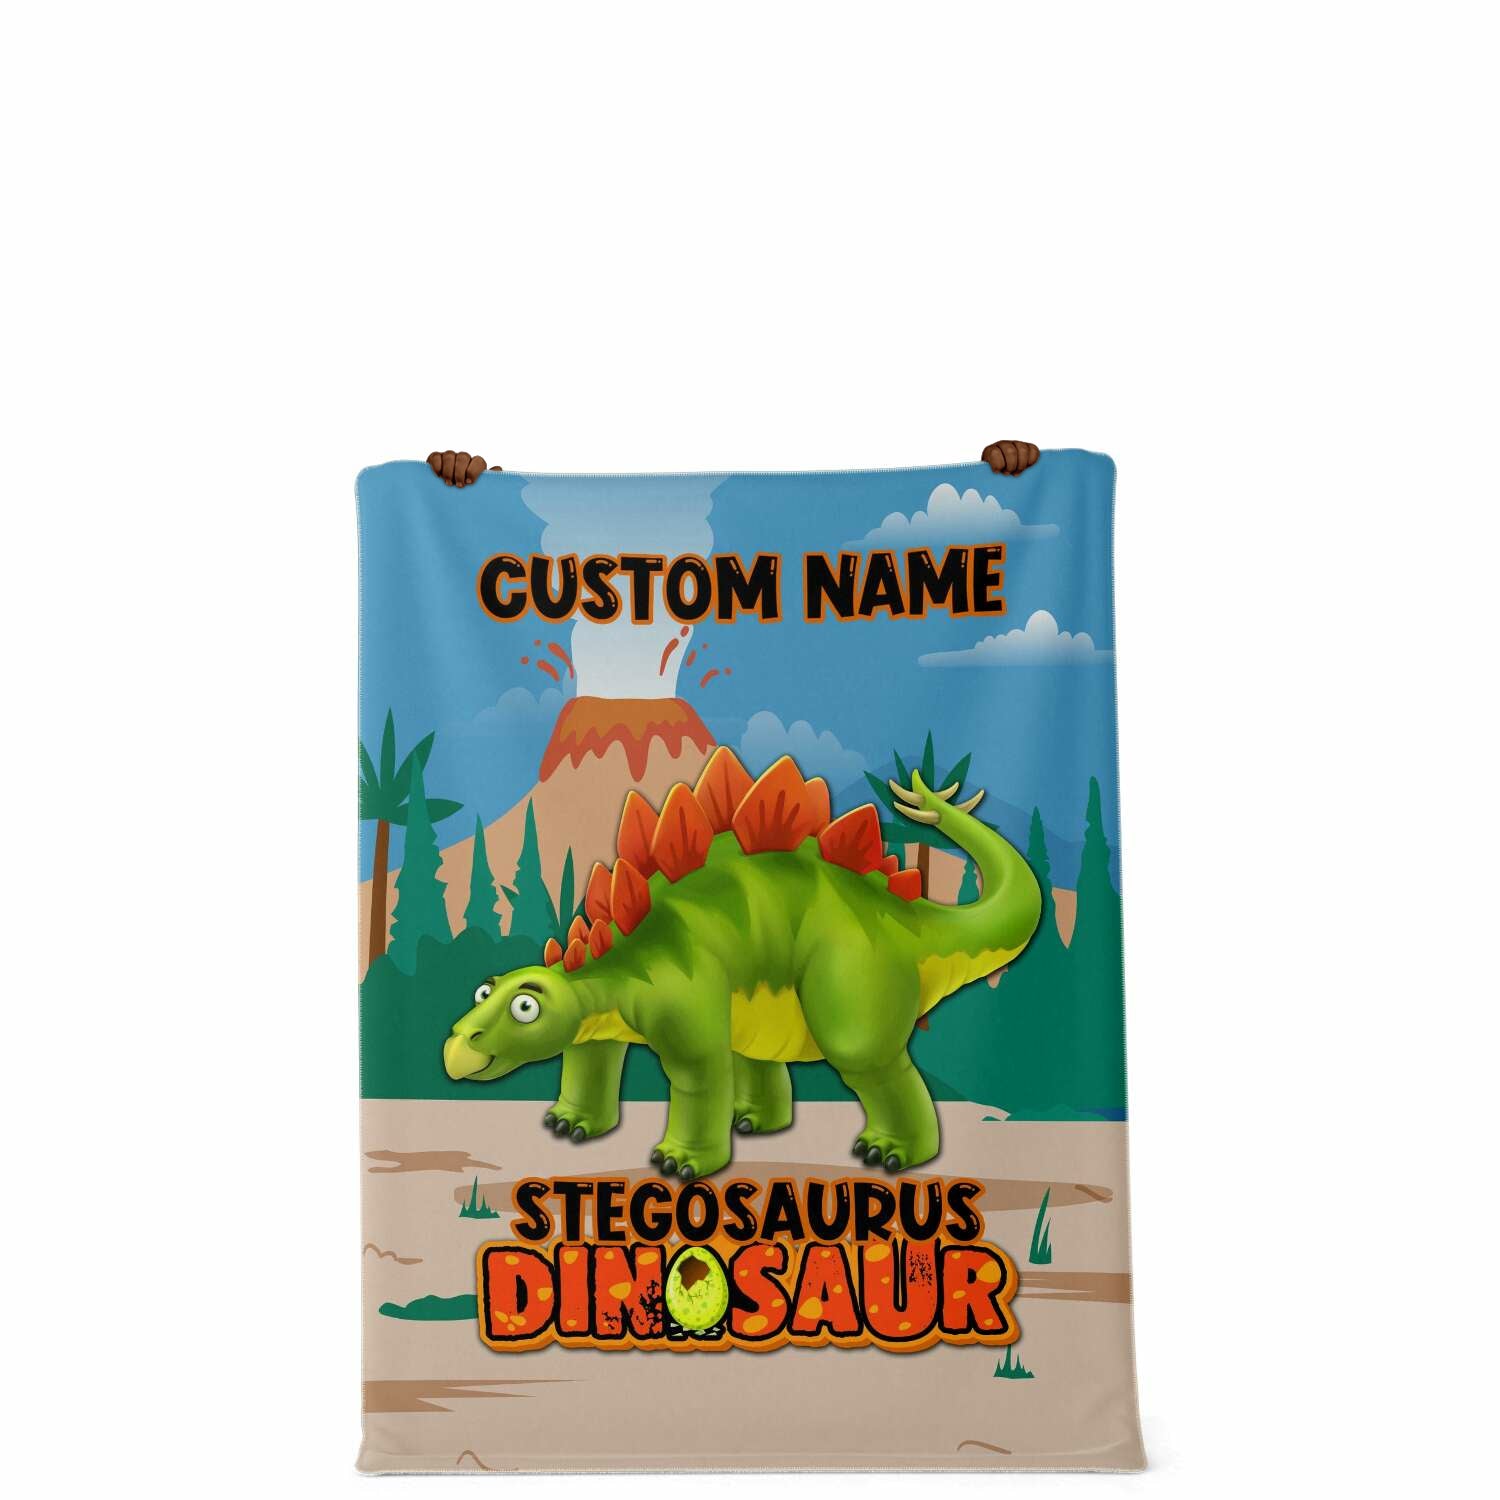 Personalized Name Stegosaurus Dinosaur Blanket for Kids, Custom Name Blankets for Boys & Girls